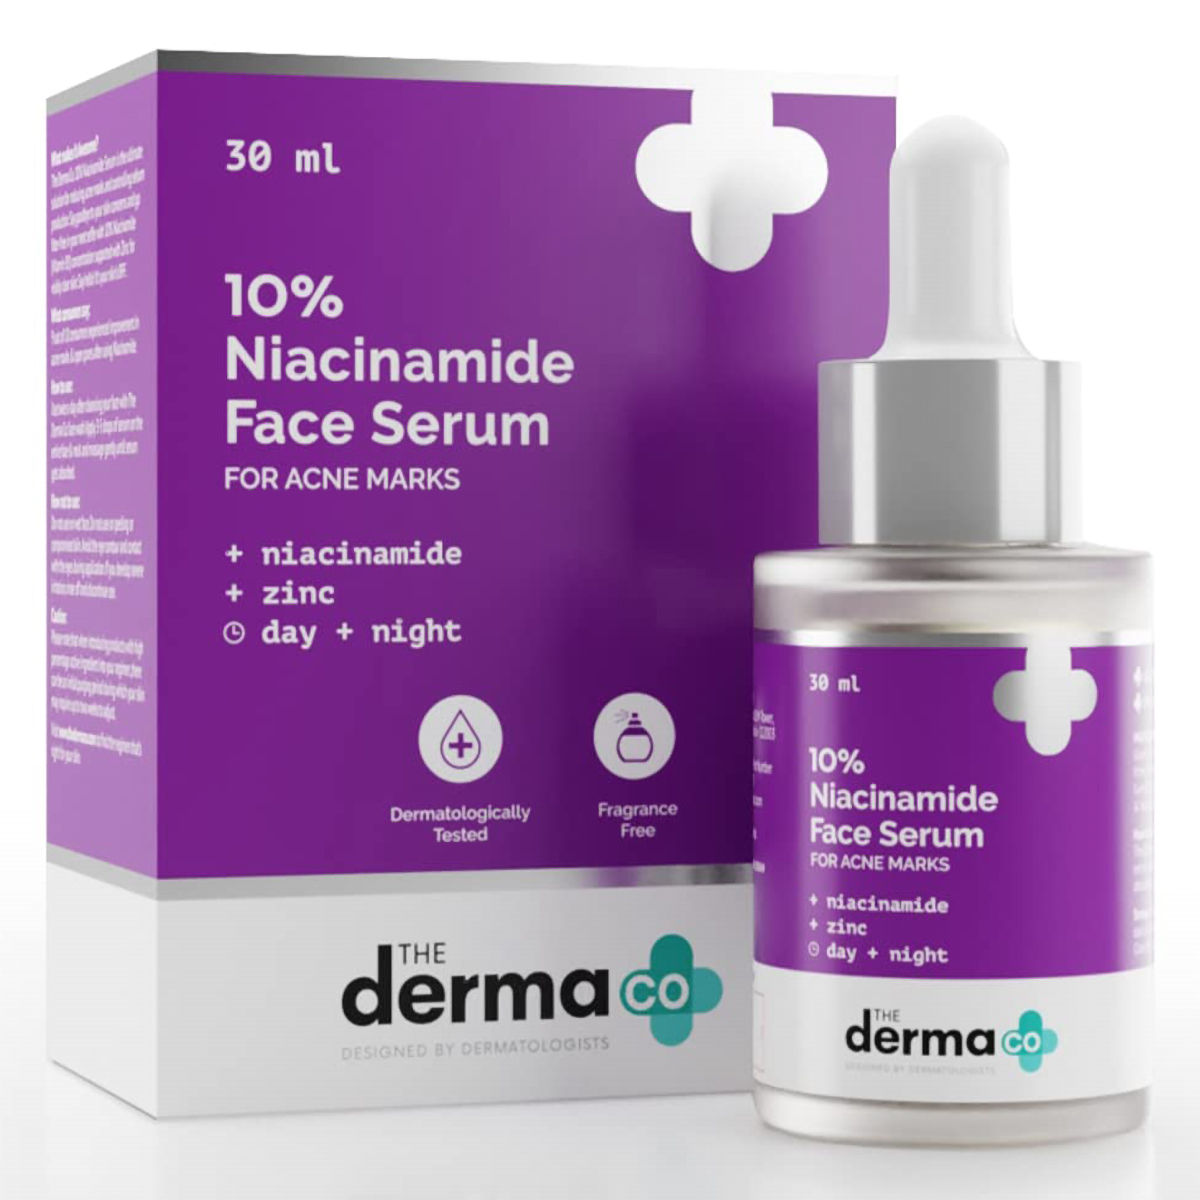 Buy The Derma Co 10% Niacinamide Face Serum, 30 ml Online